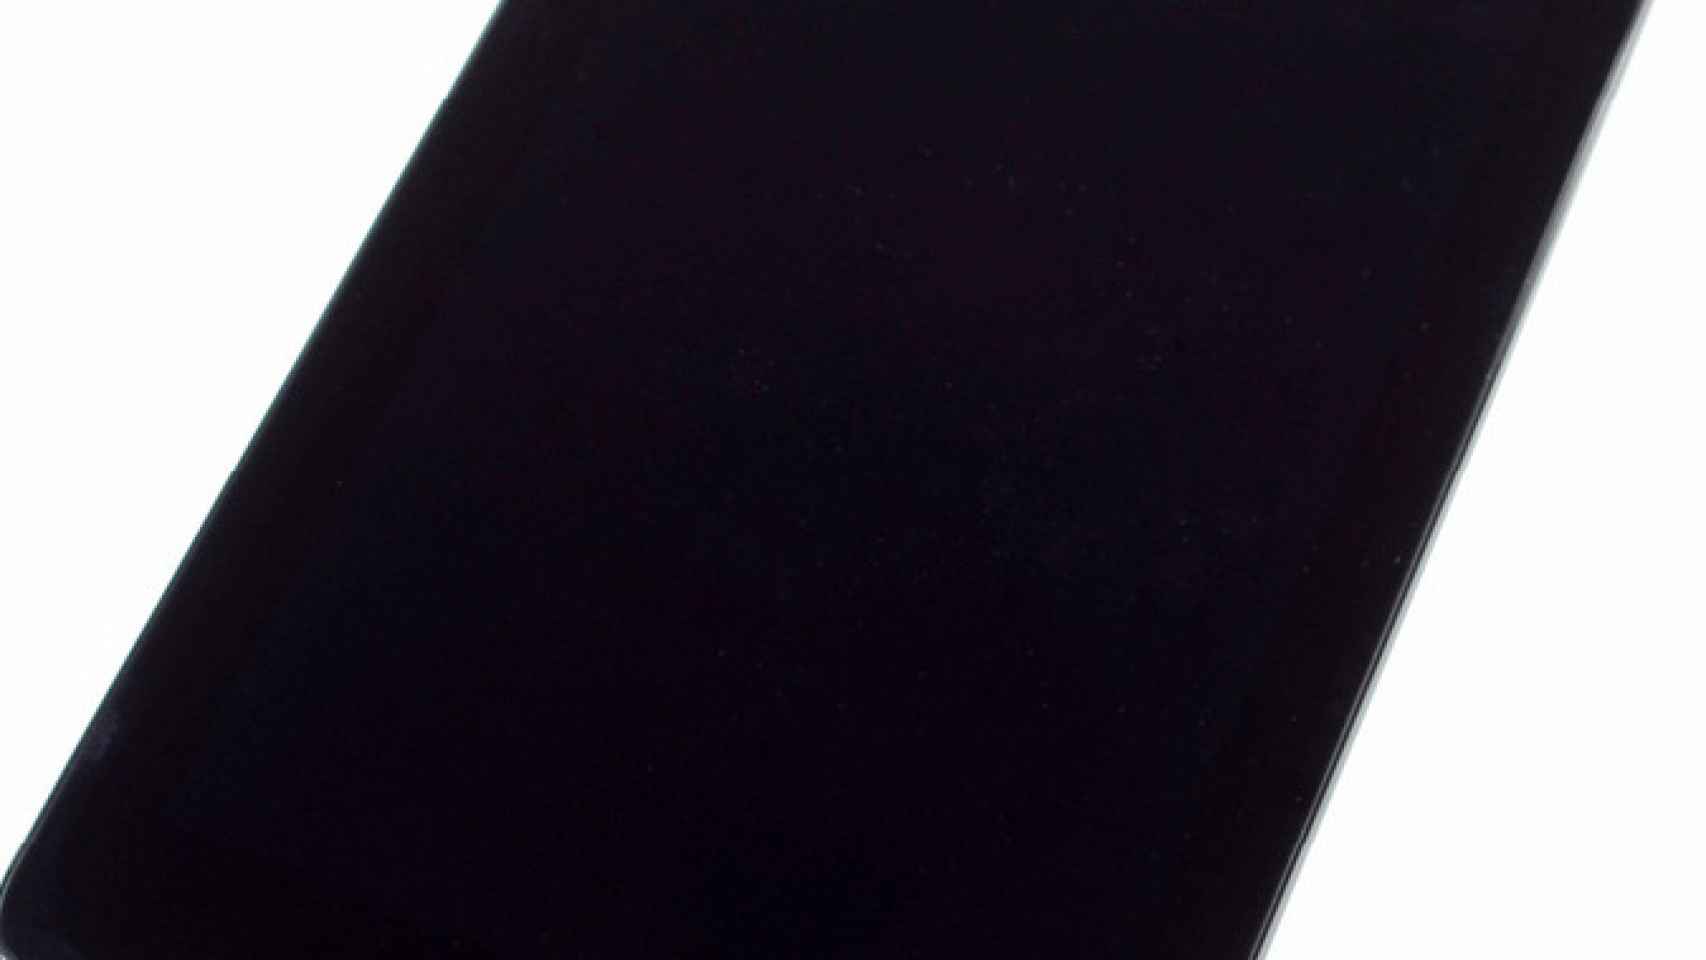 Nexus 7 por dentro: Desmontaje, hardware y sorpresas